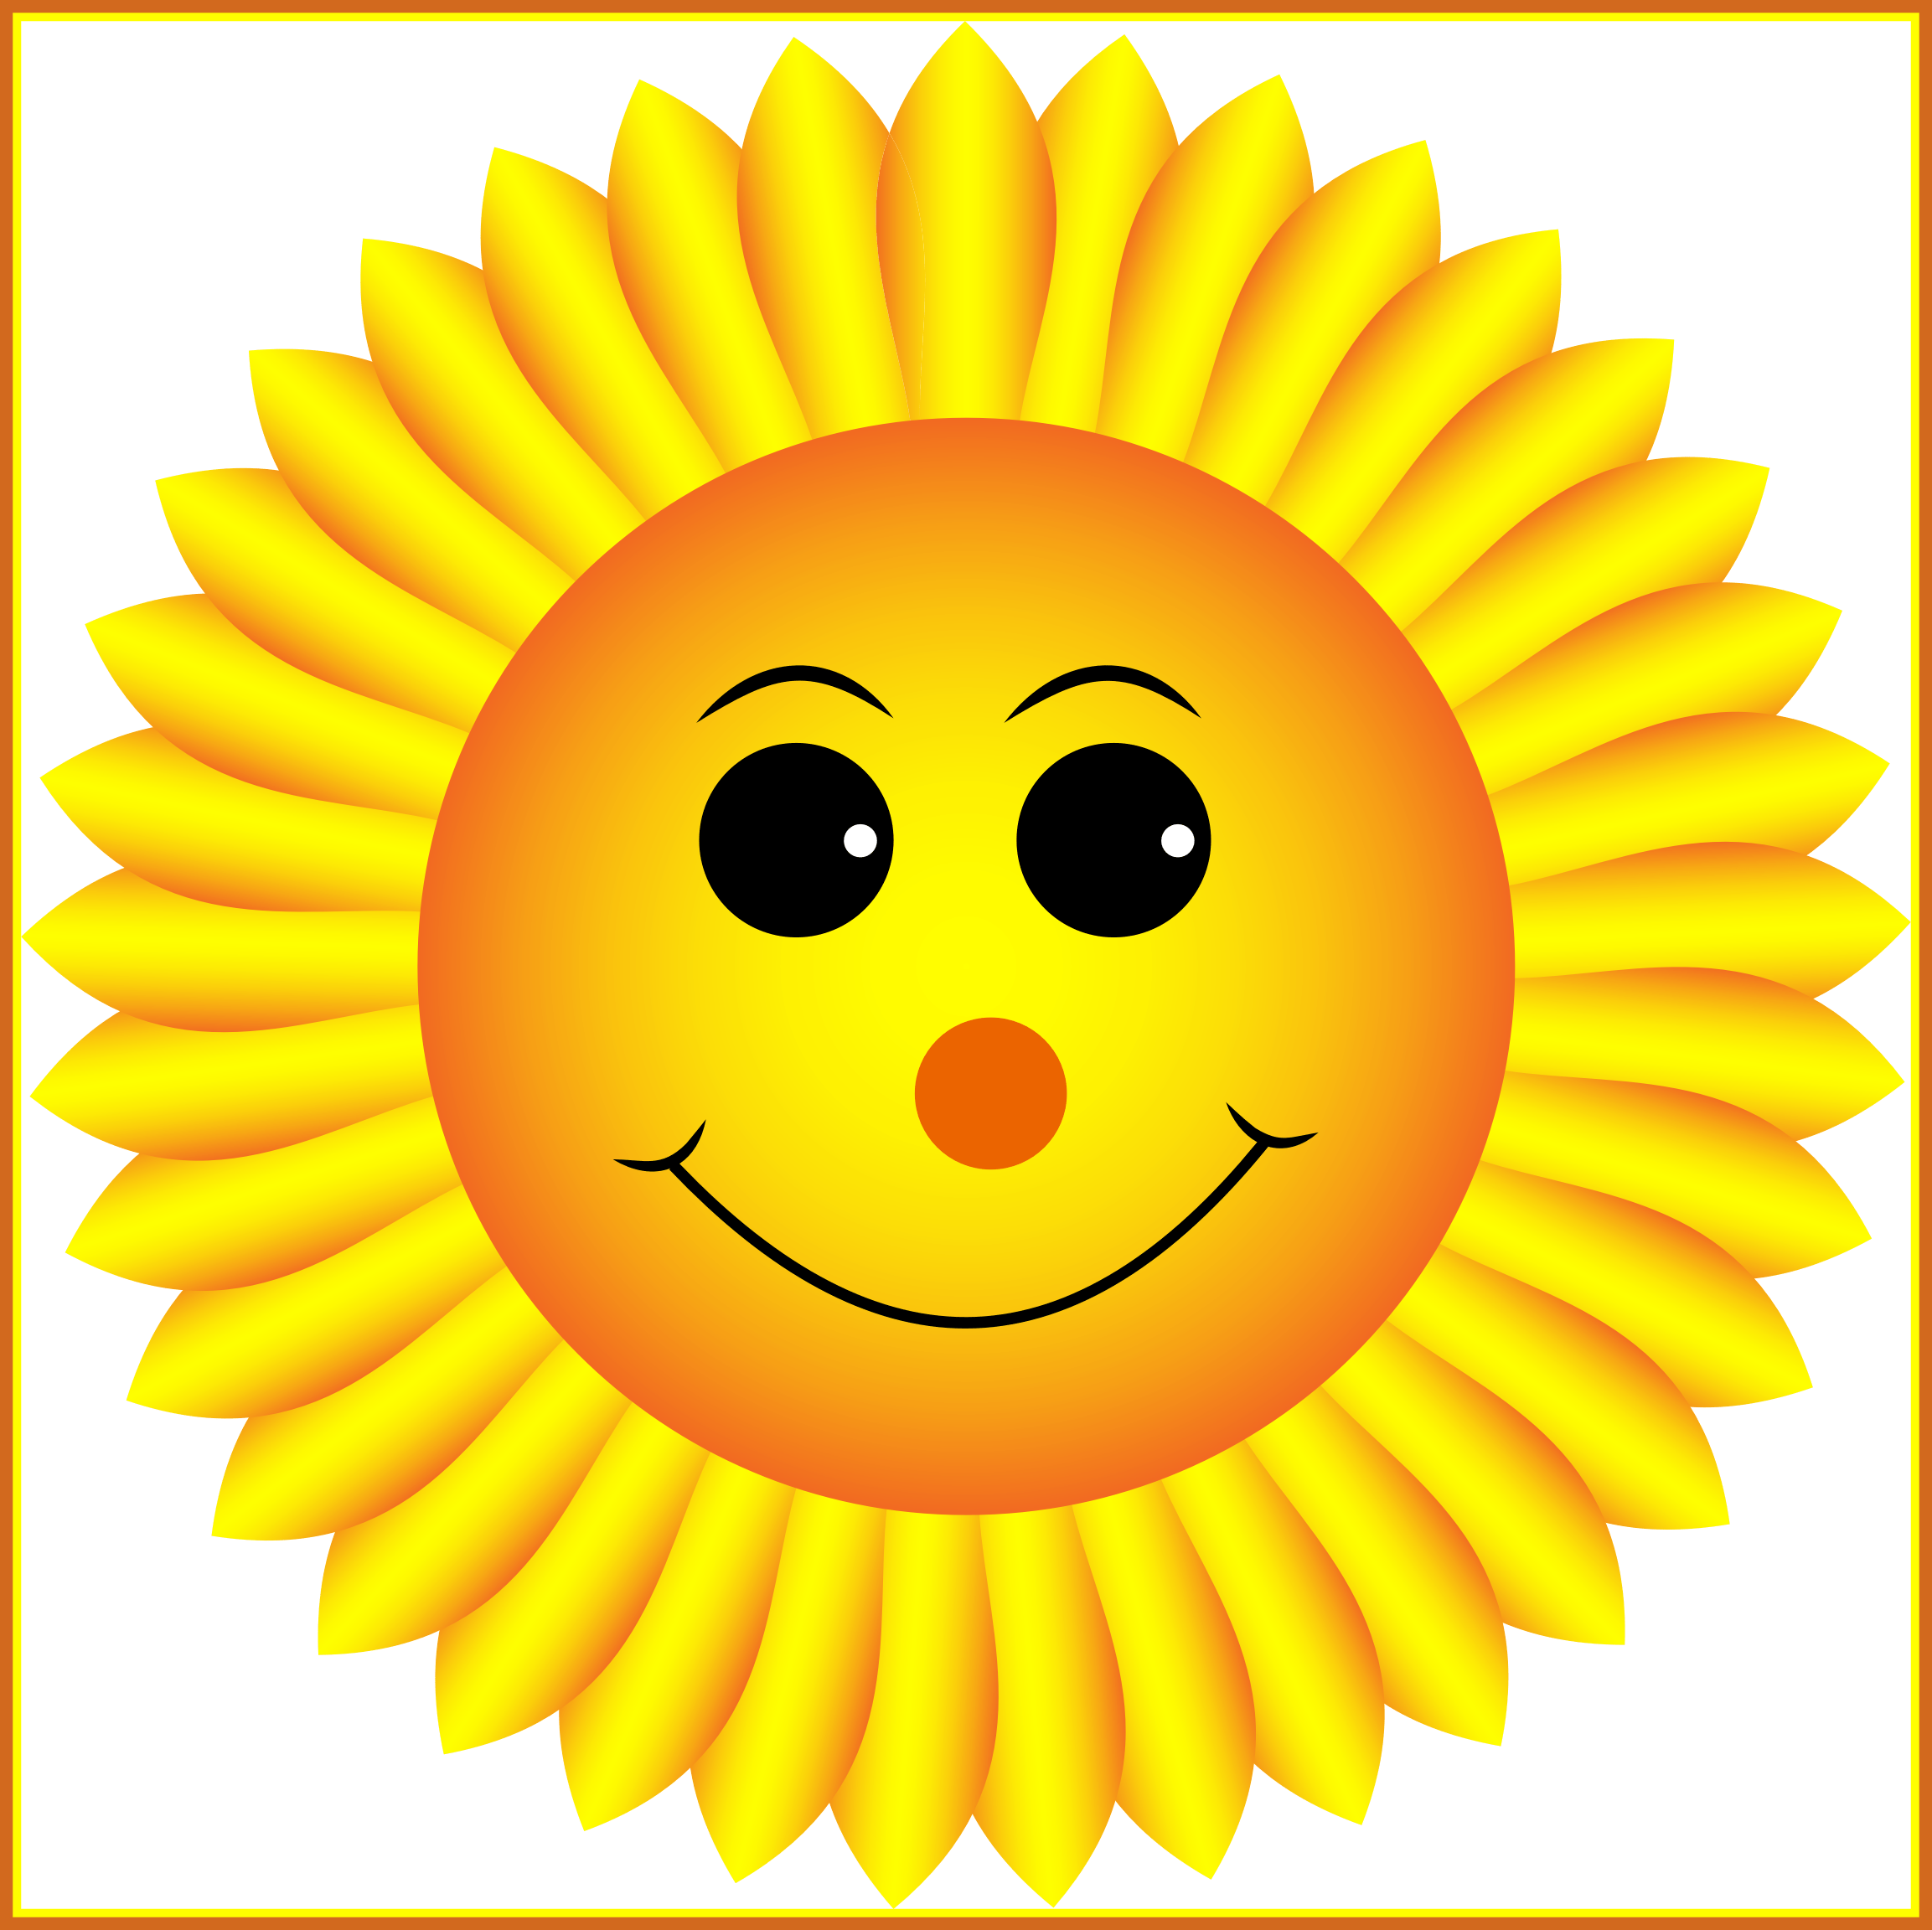 Картинка солнышко без лучиков для детей. Солнце улыбка. Солнце для дошкольников. Красивое солнышко. Смайлик улыбка.